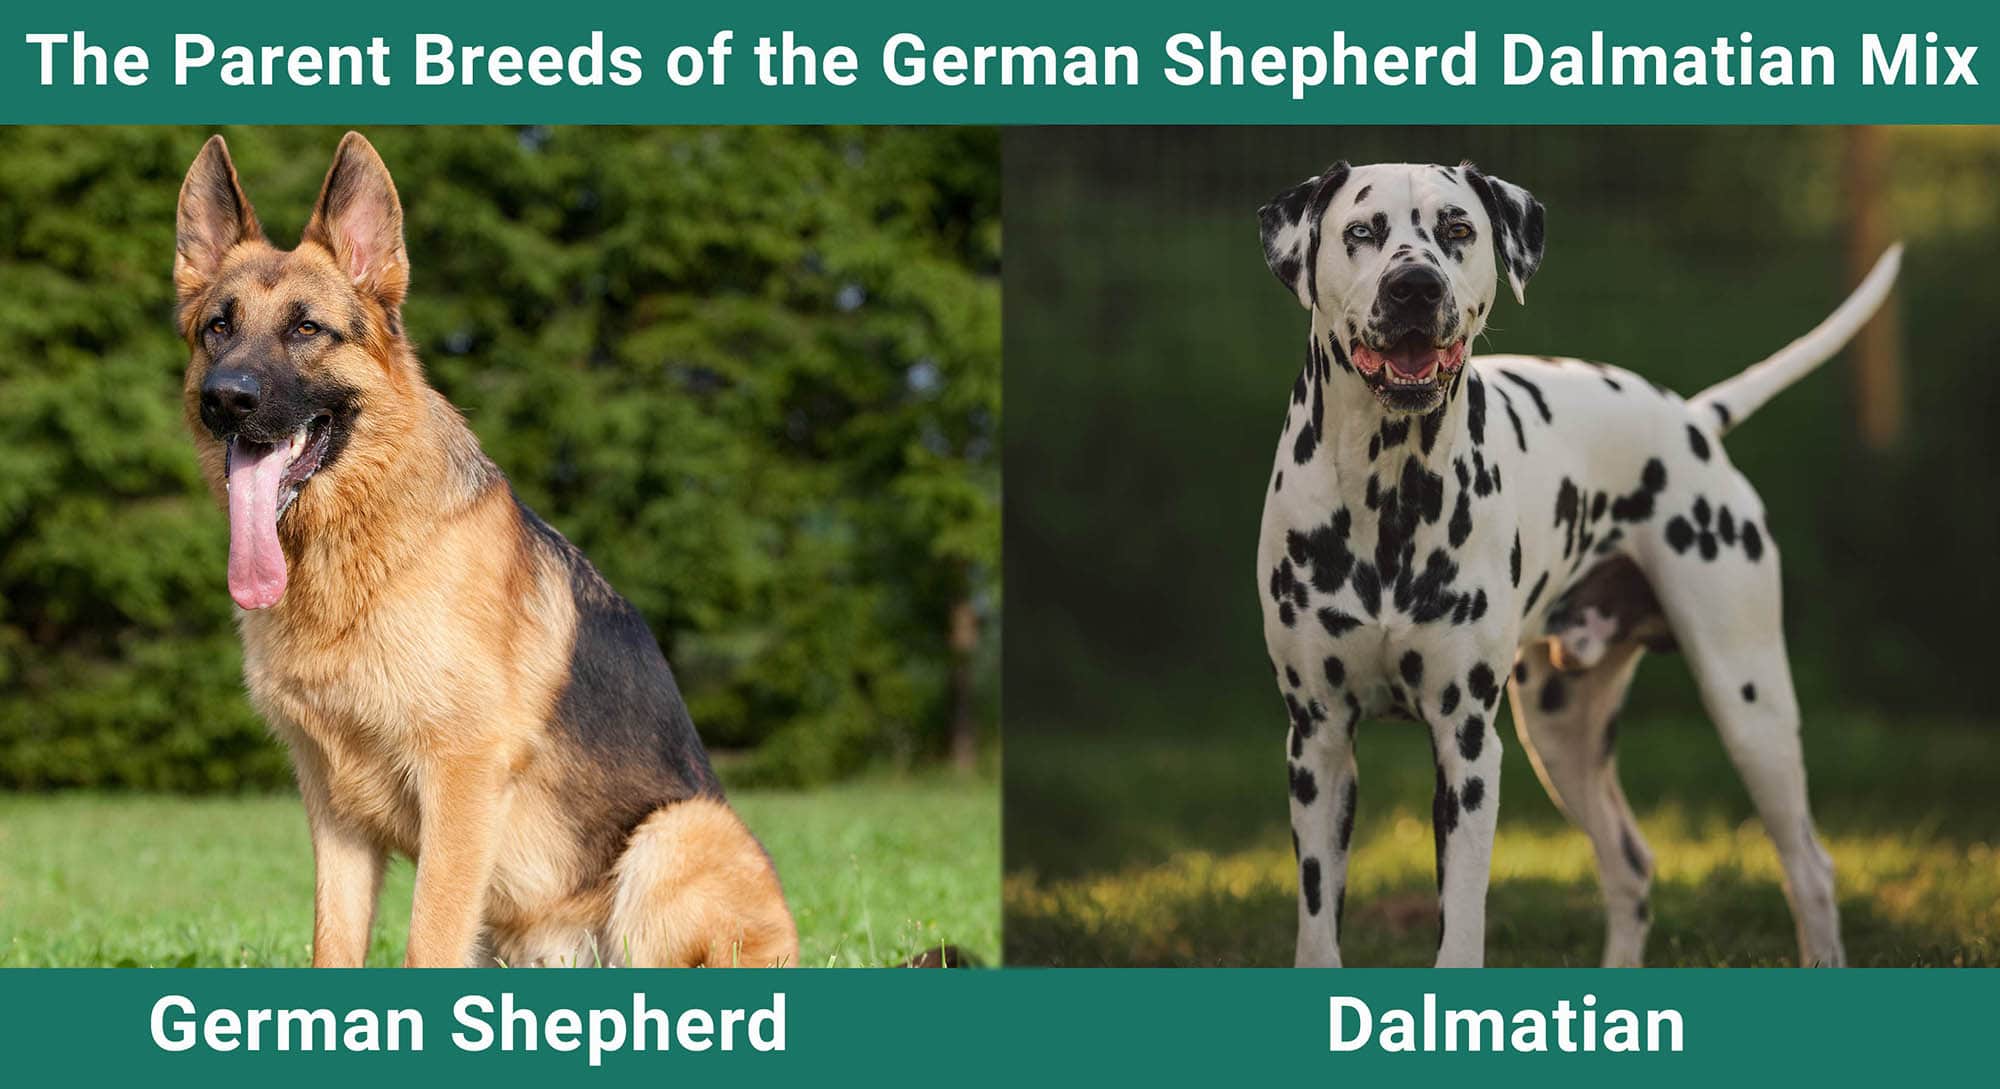 The Parent Breeds of the German Shepherd Dalmatian Mix